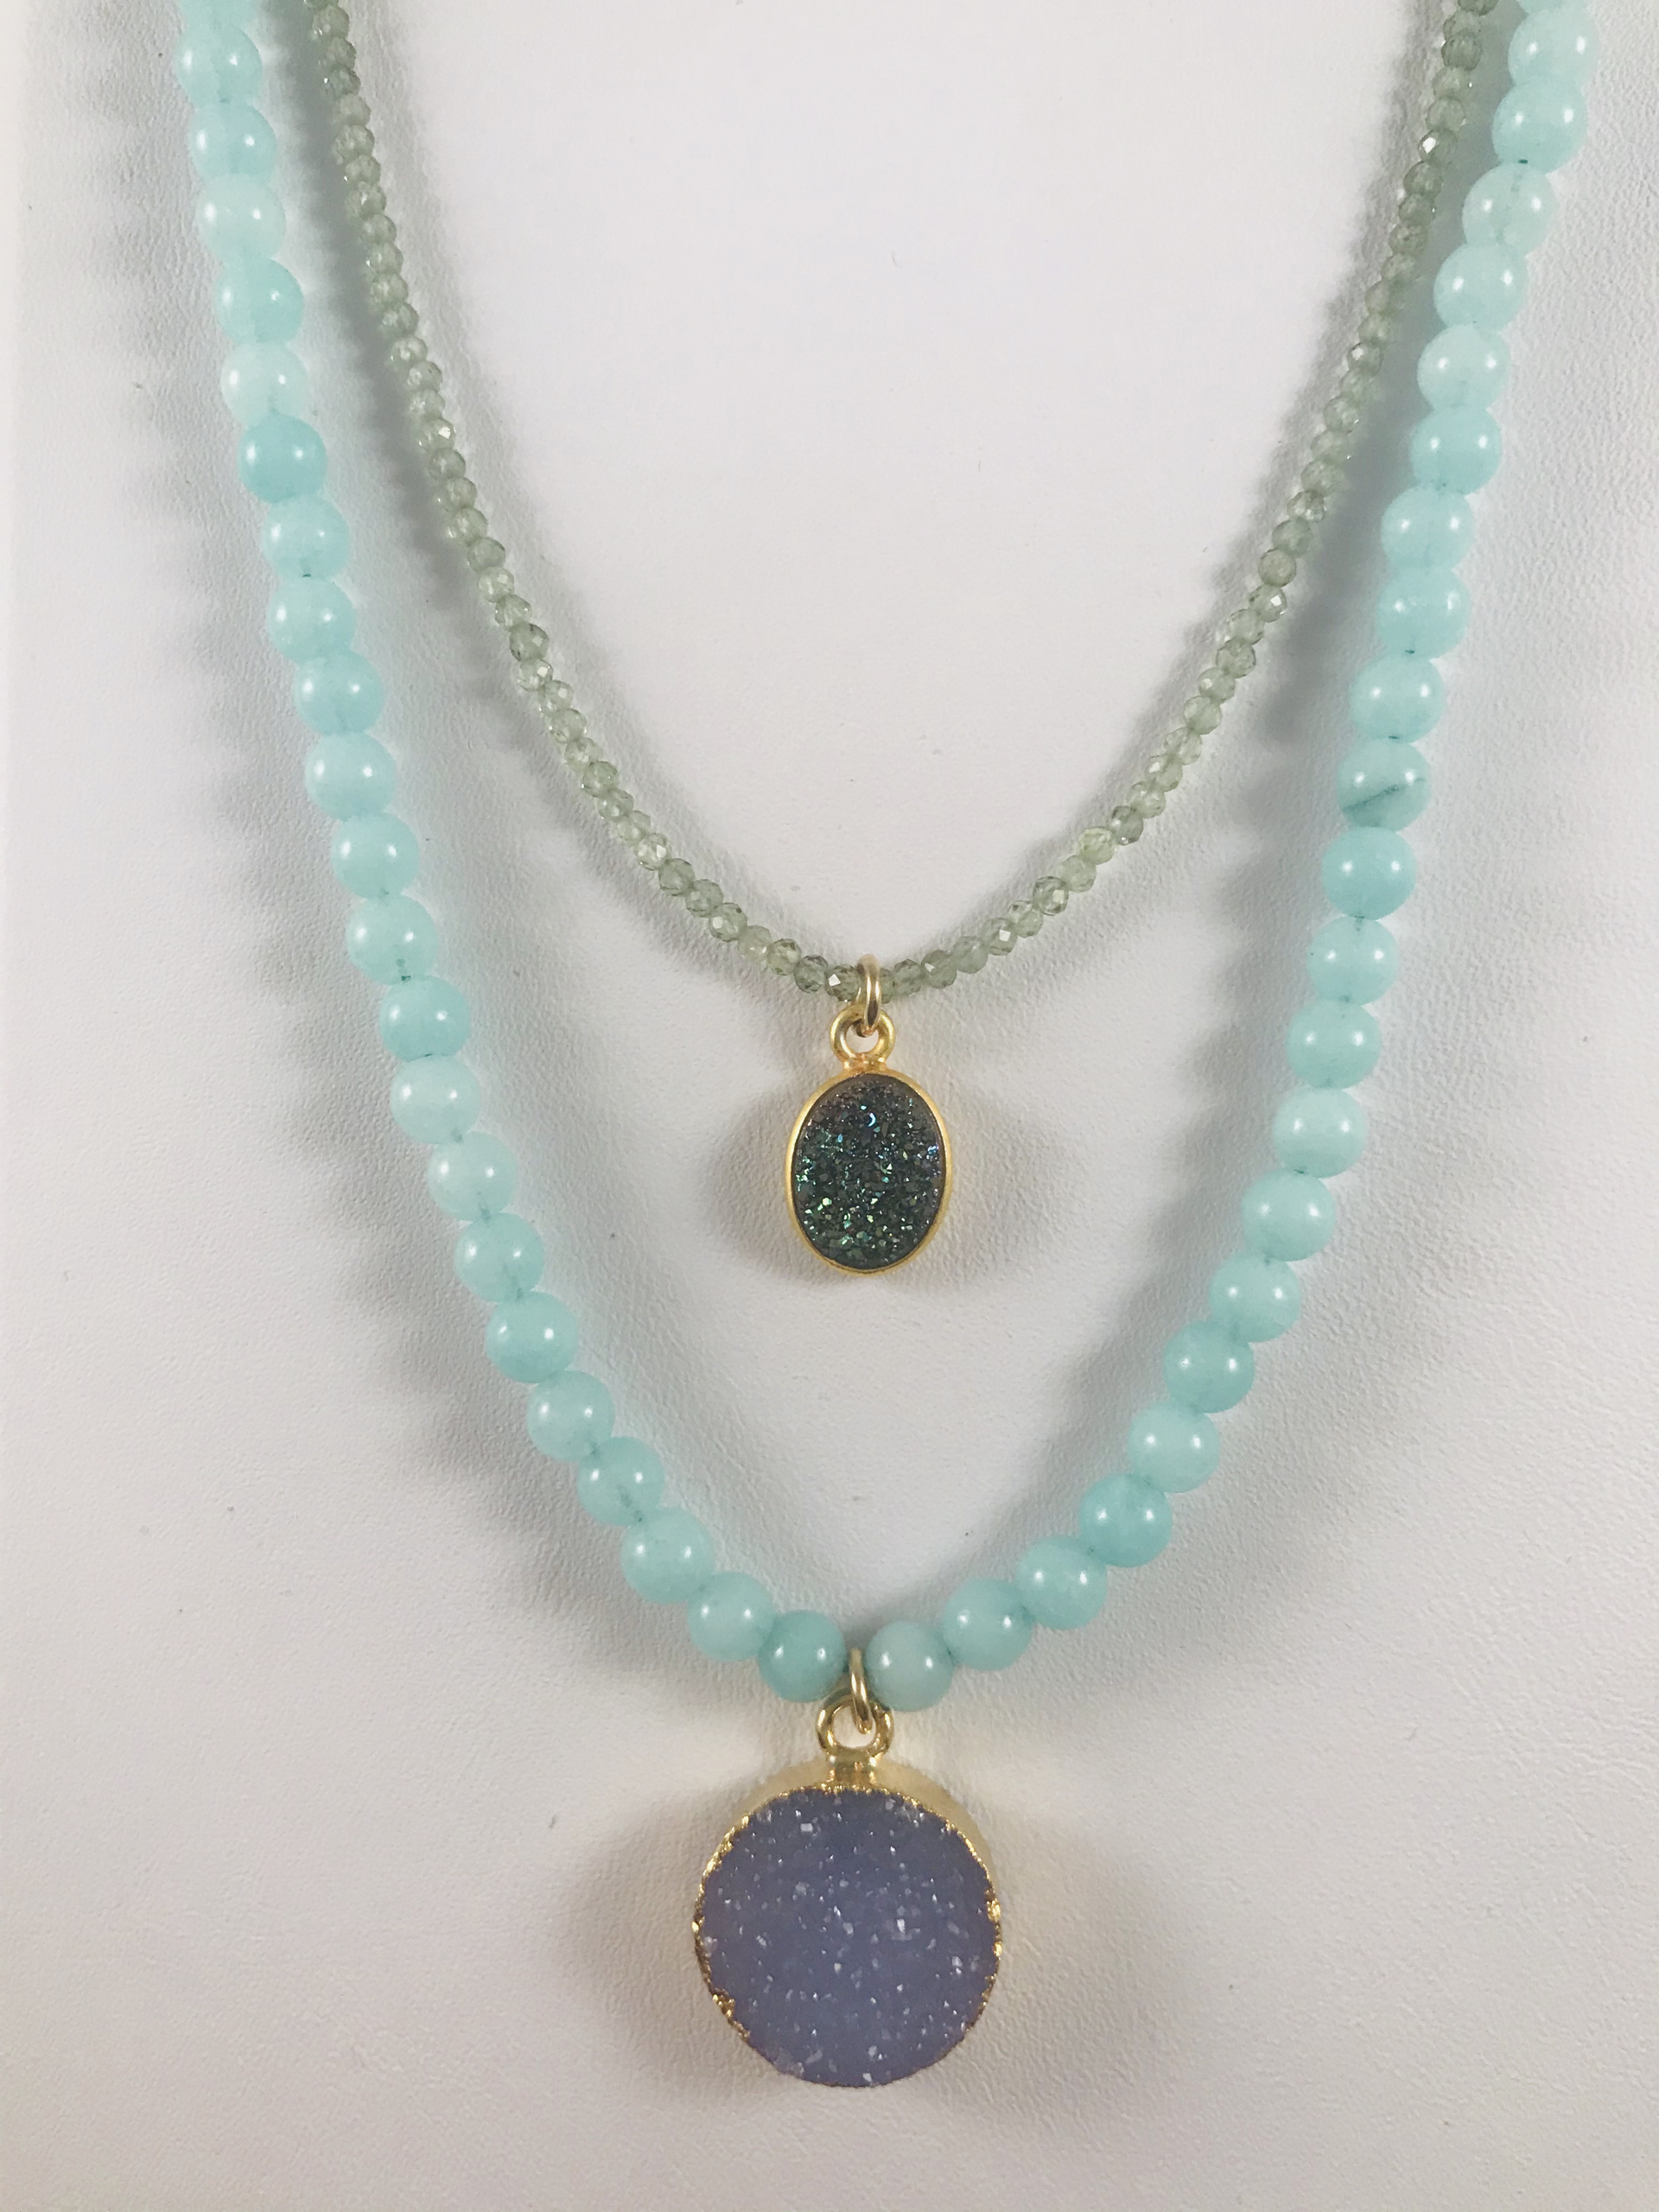 Aqua Jade Round Blue Druzy Necklace by Nance Trueworthy